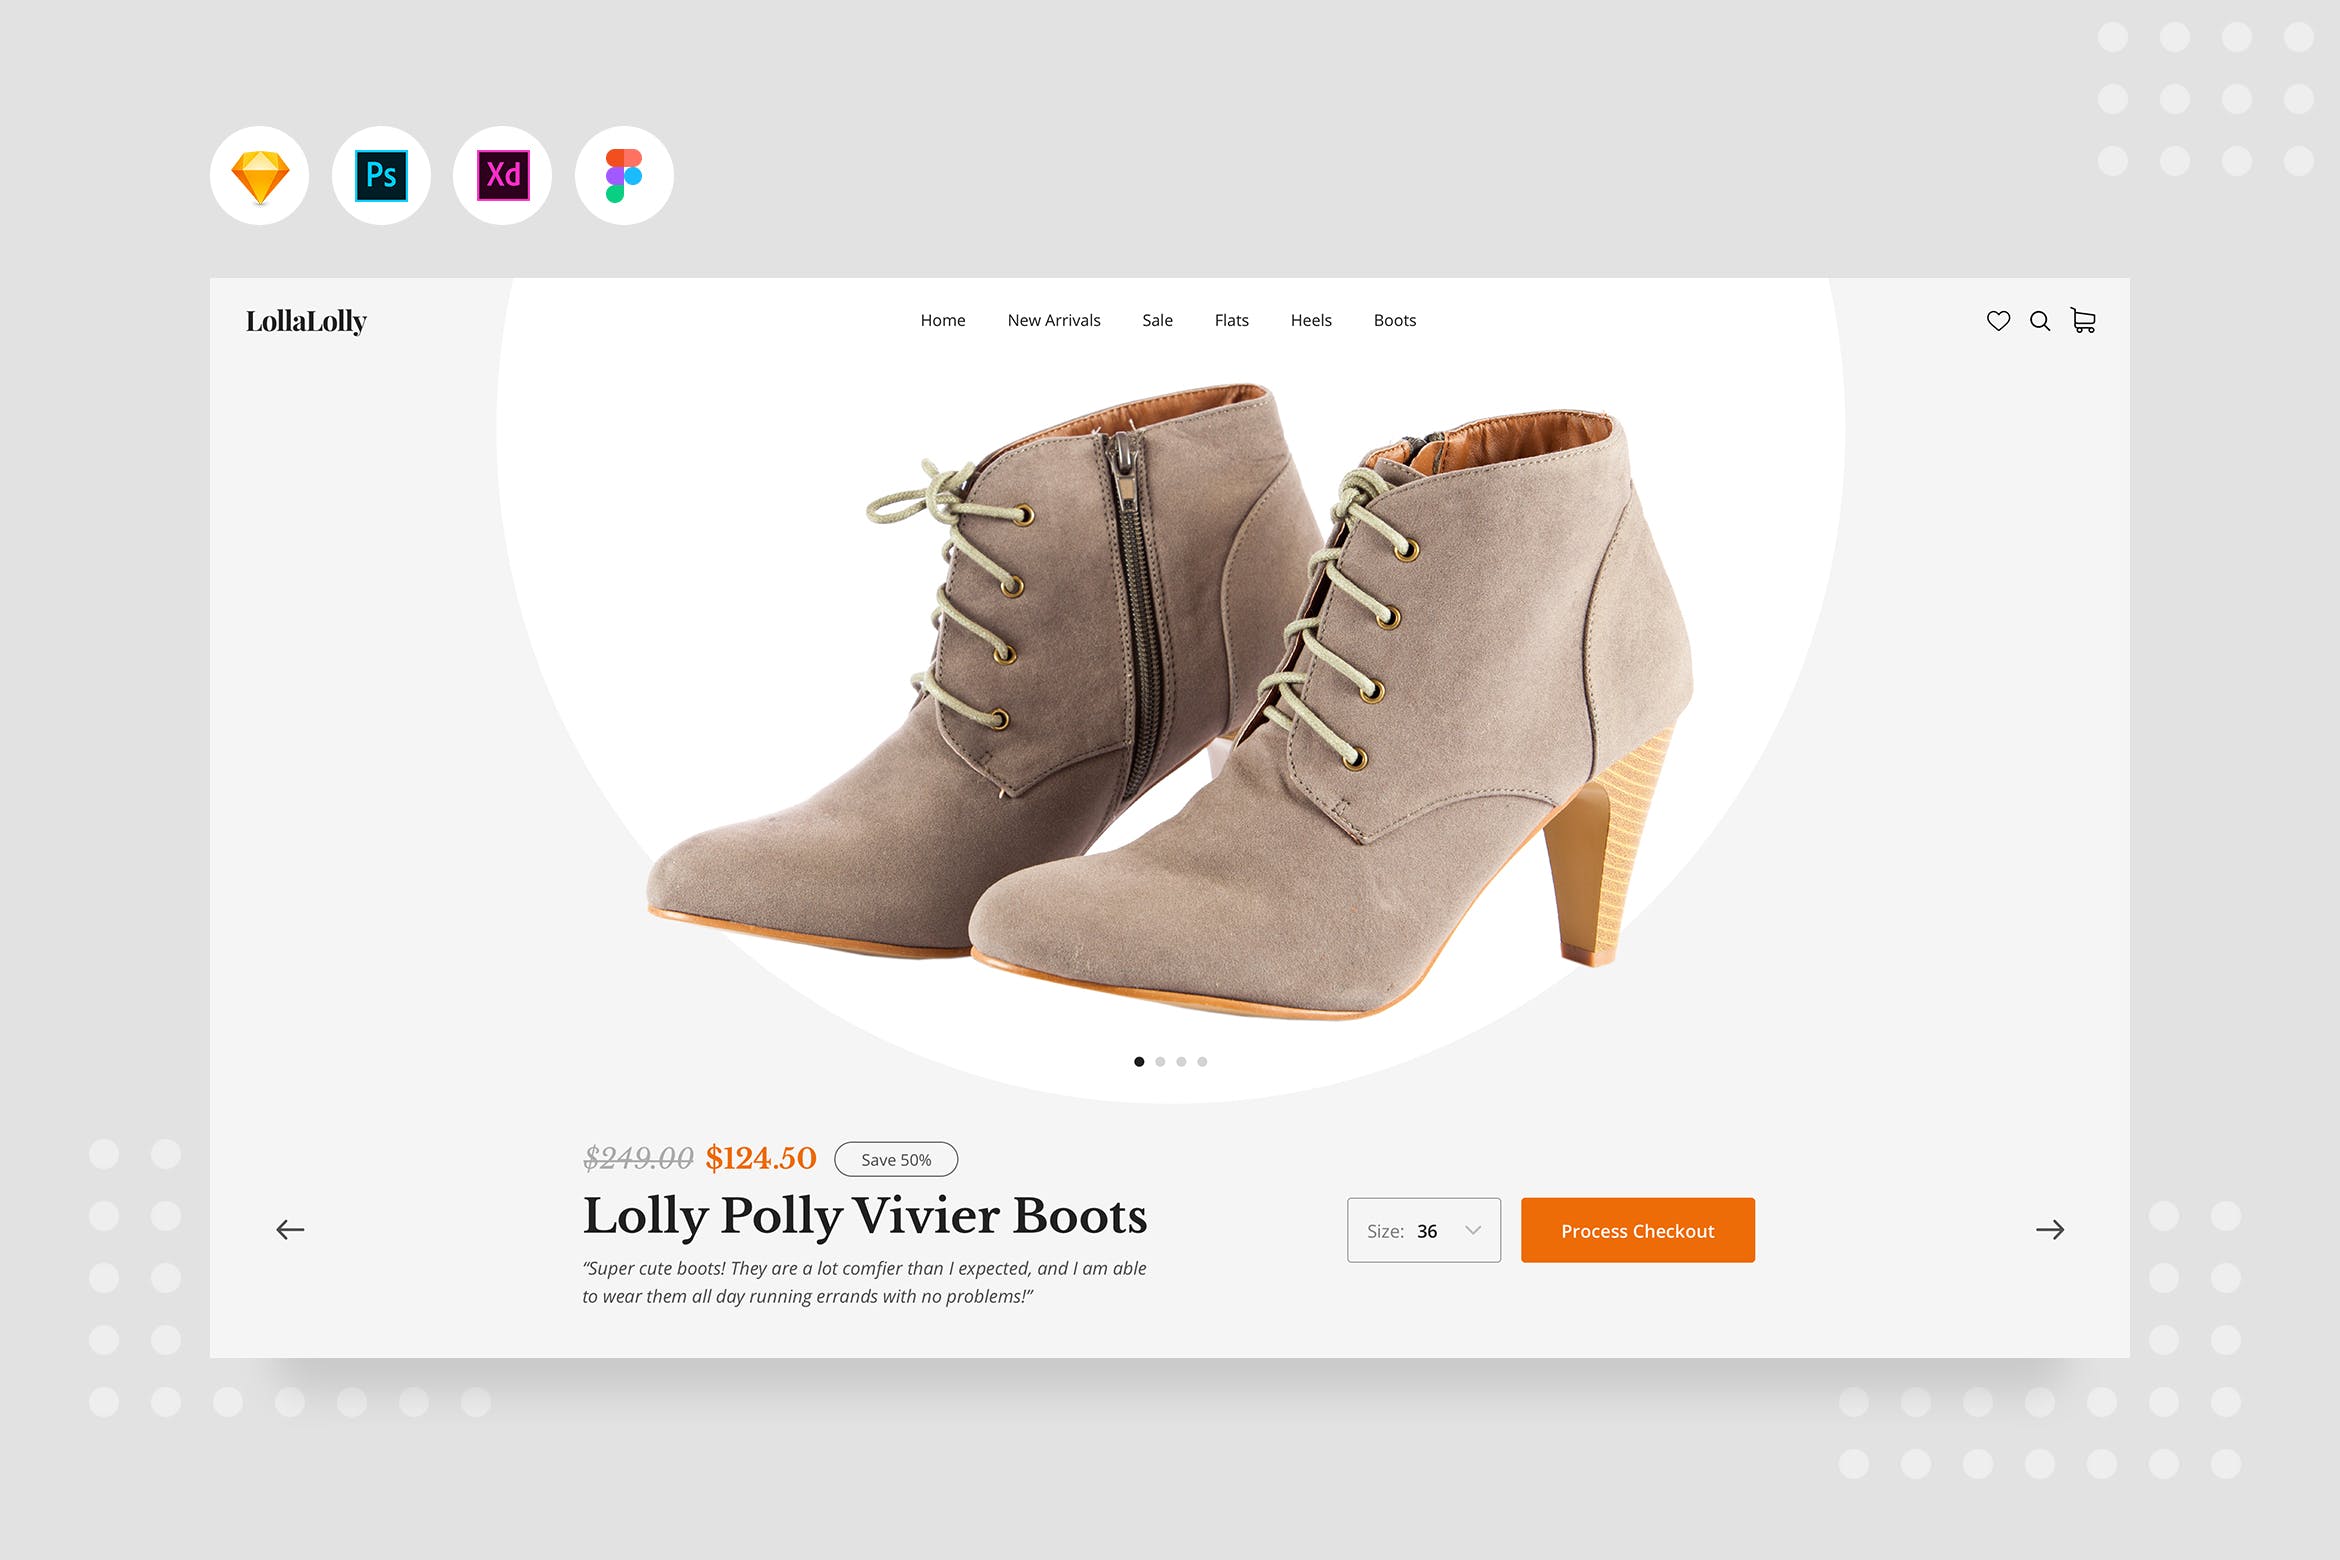 女靴产品/商品详情页界面设计素材库精选模板 DailyUI.V16 – Female Boots Product Detail插图